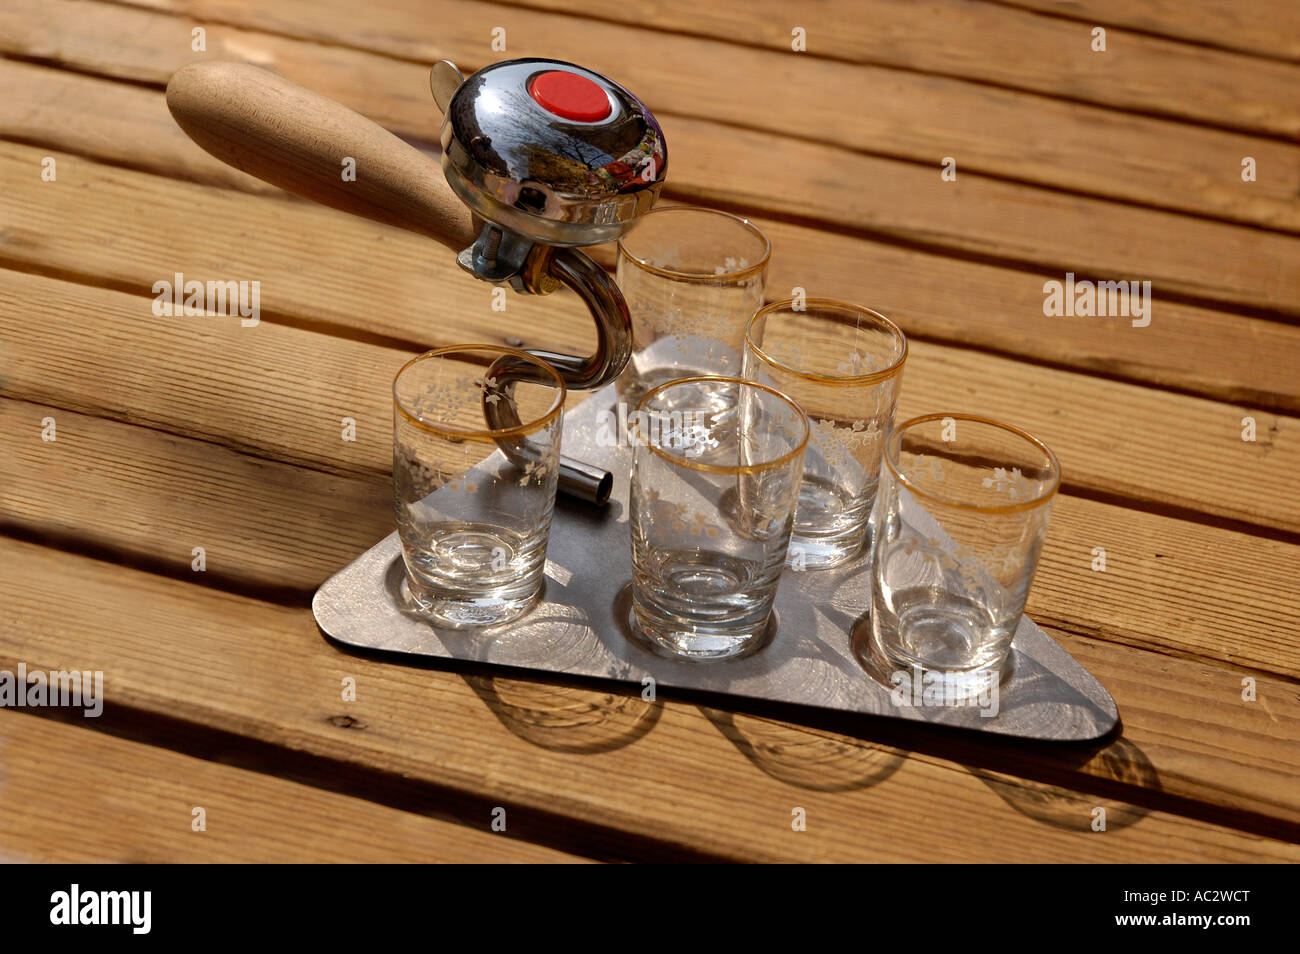 L'outil de construction de la truelle avec verres de vodka vide artisanat souvenirs humoristiques Banque D'Images